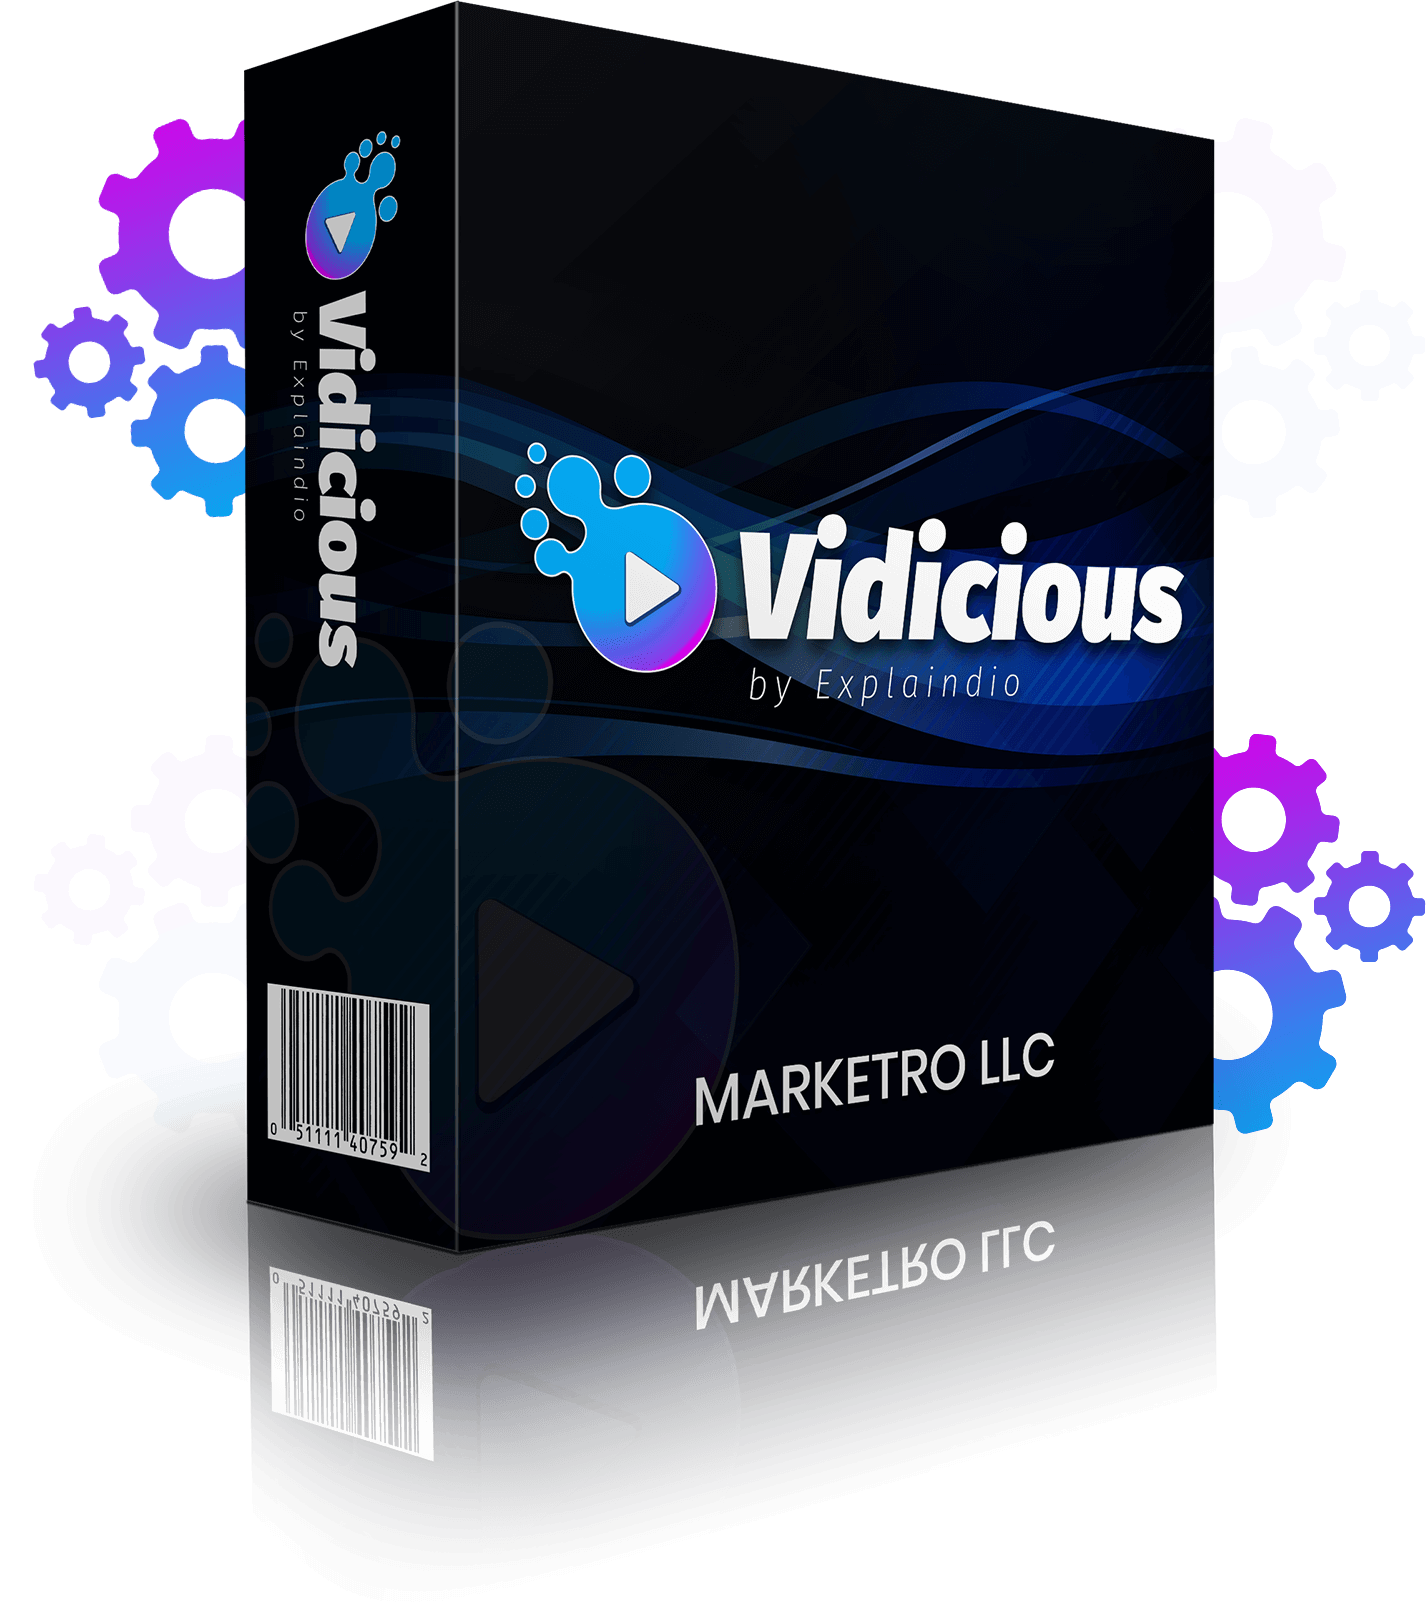 Vidicious-Review